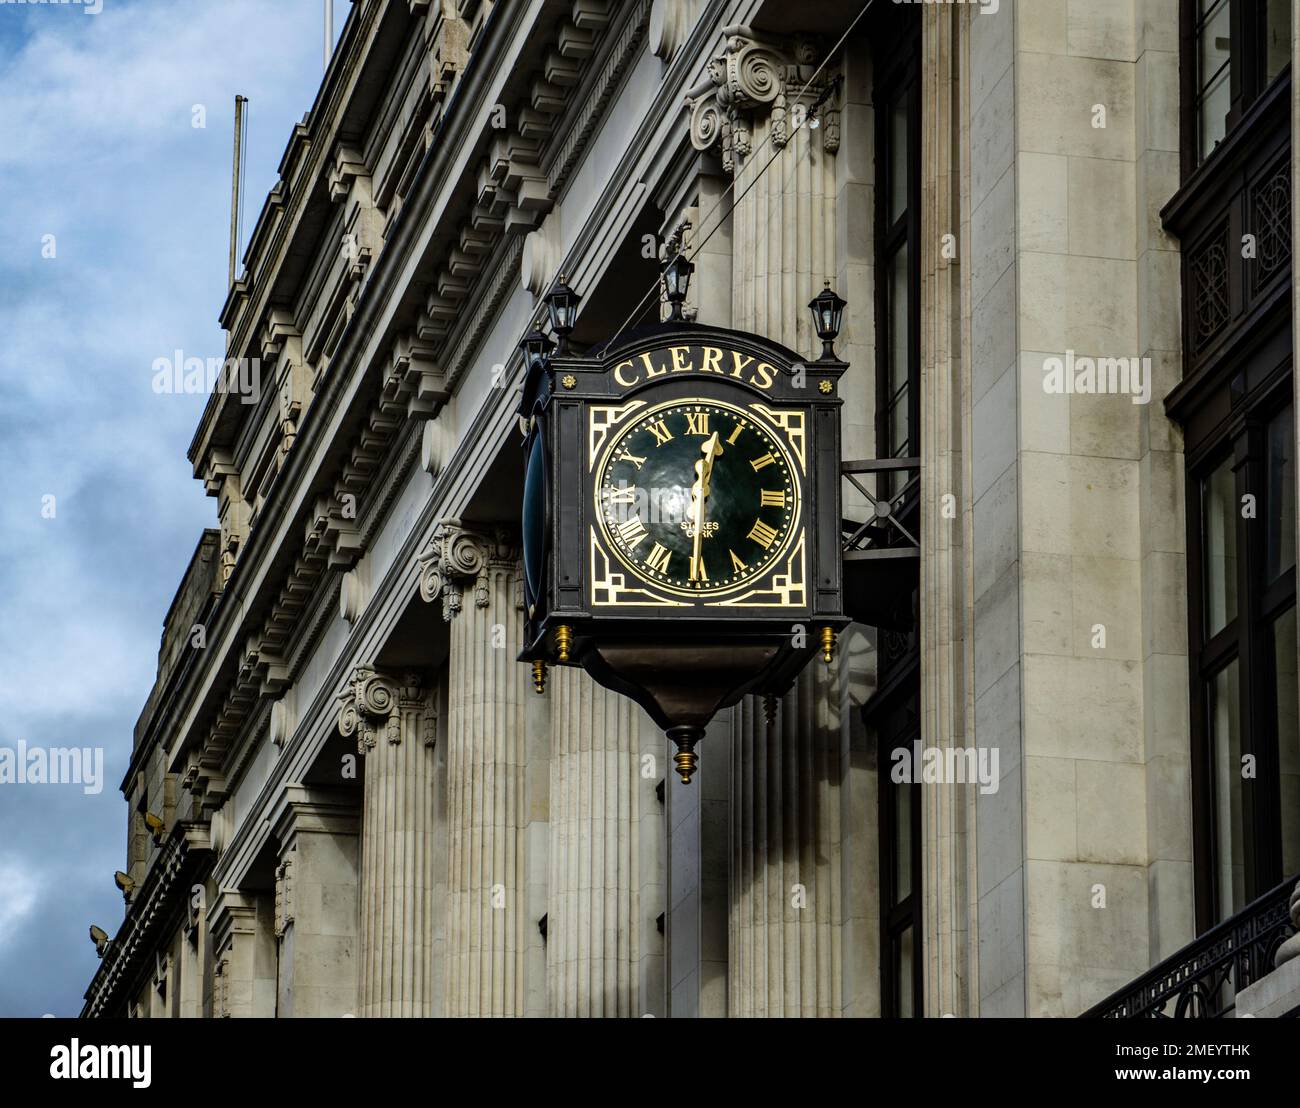 Il famoso orologio di Clery è stato svelato nel gennaio 2022 a seguito della sua ristrutturazione. Sul quartiere Clerys in o’Connell St Dublino, Irlanda. Foto Stock